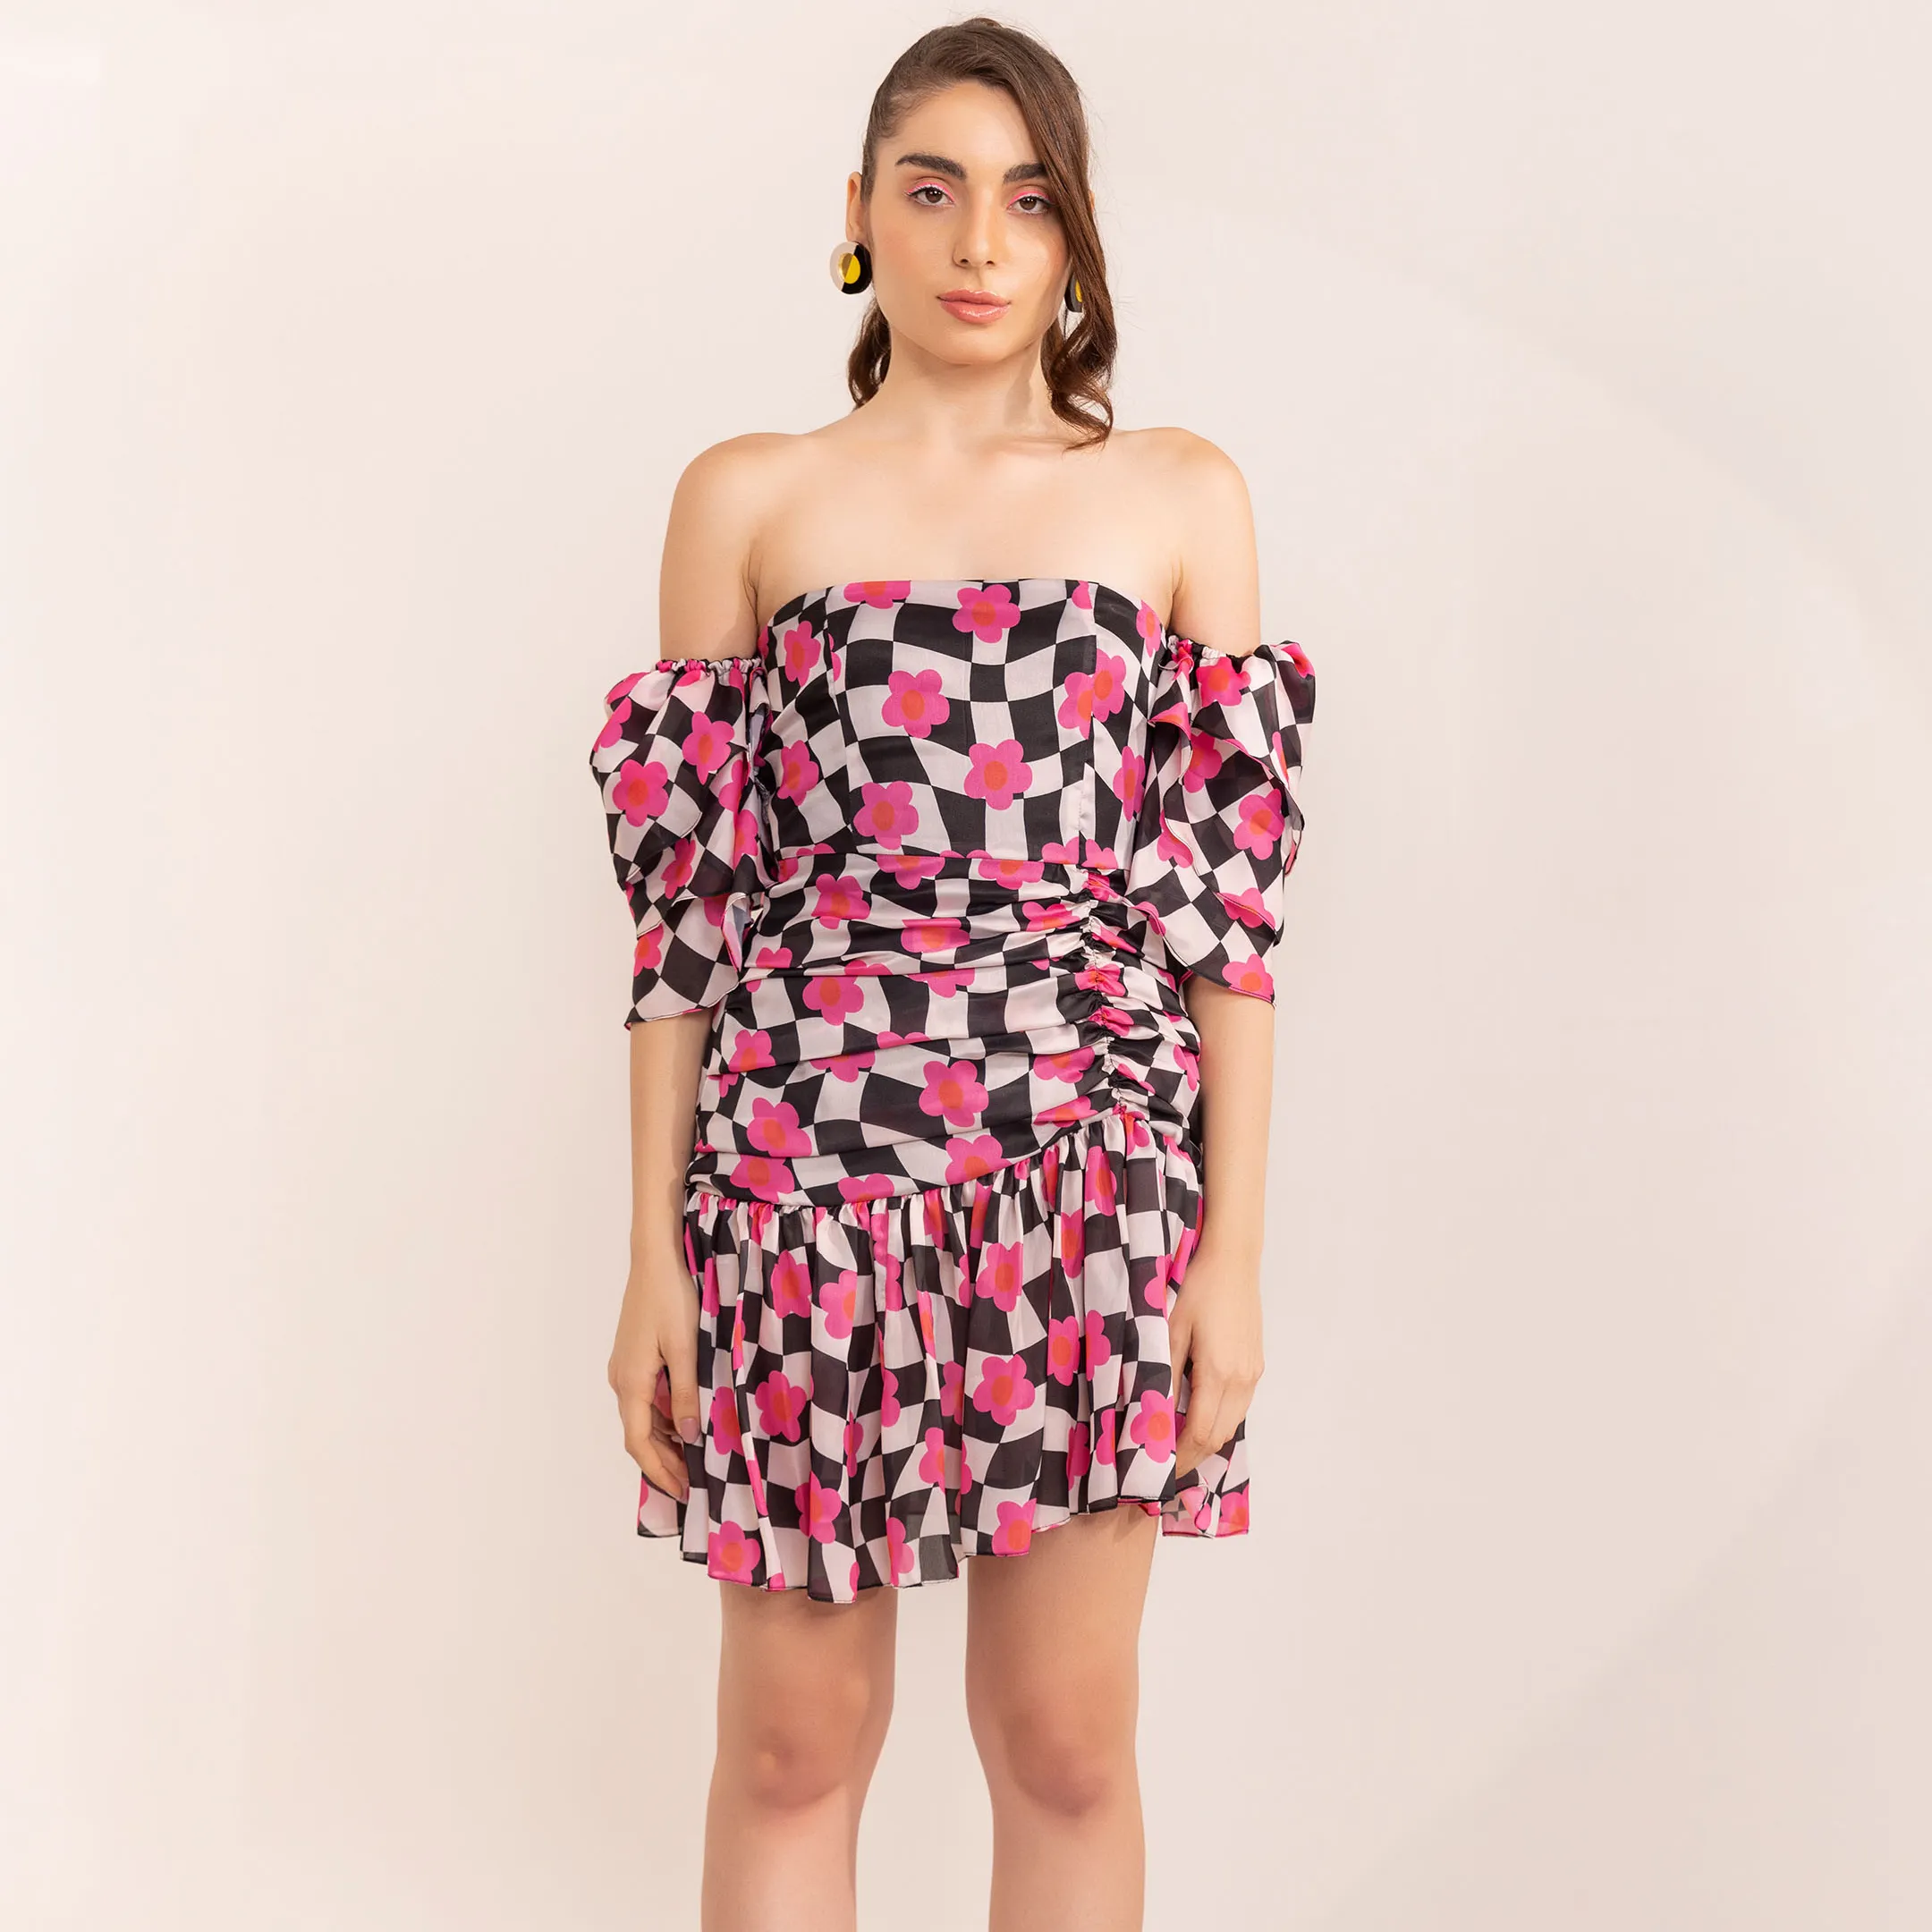 Vestido corto con hombros descubiertos y estampado a cuadros de limonada rosa con diseño de tendencia 2014 para mujer, vestido de una pieza al precio más bajo